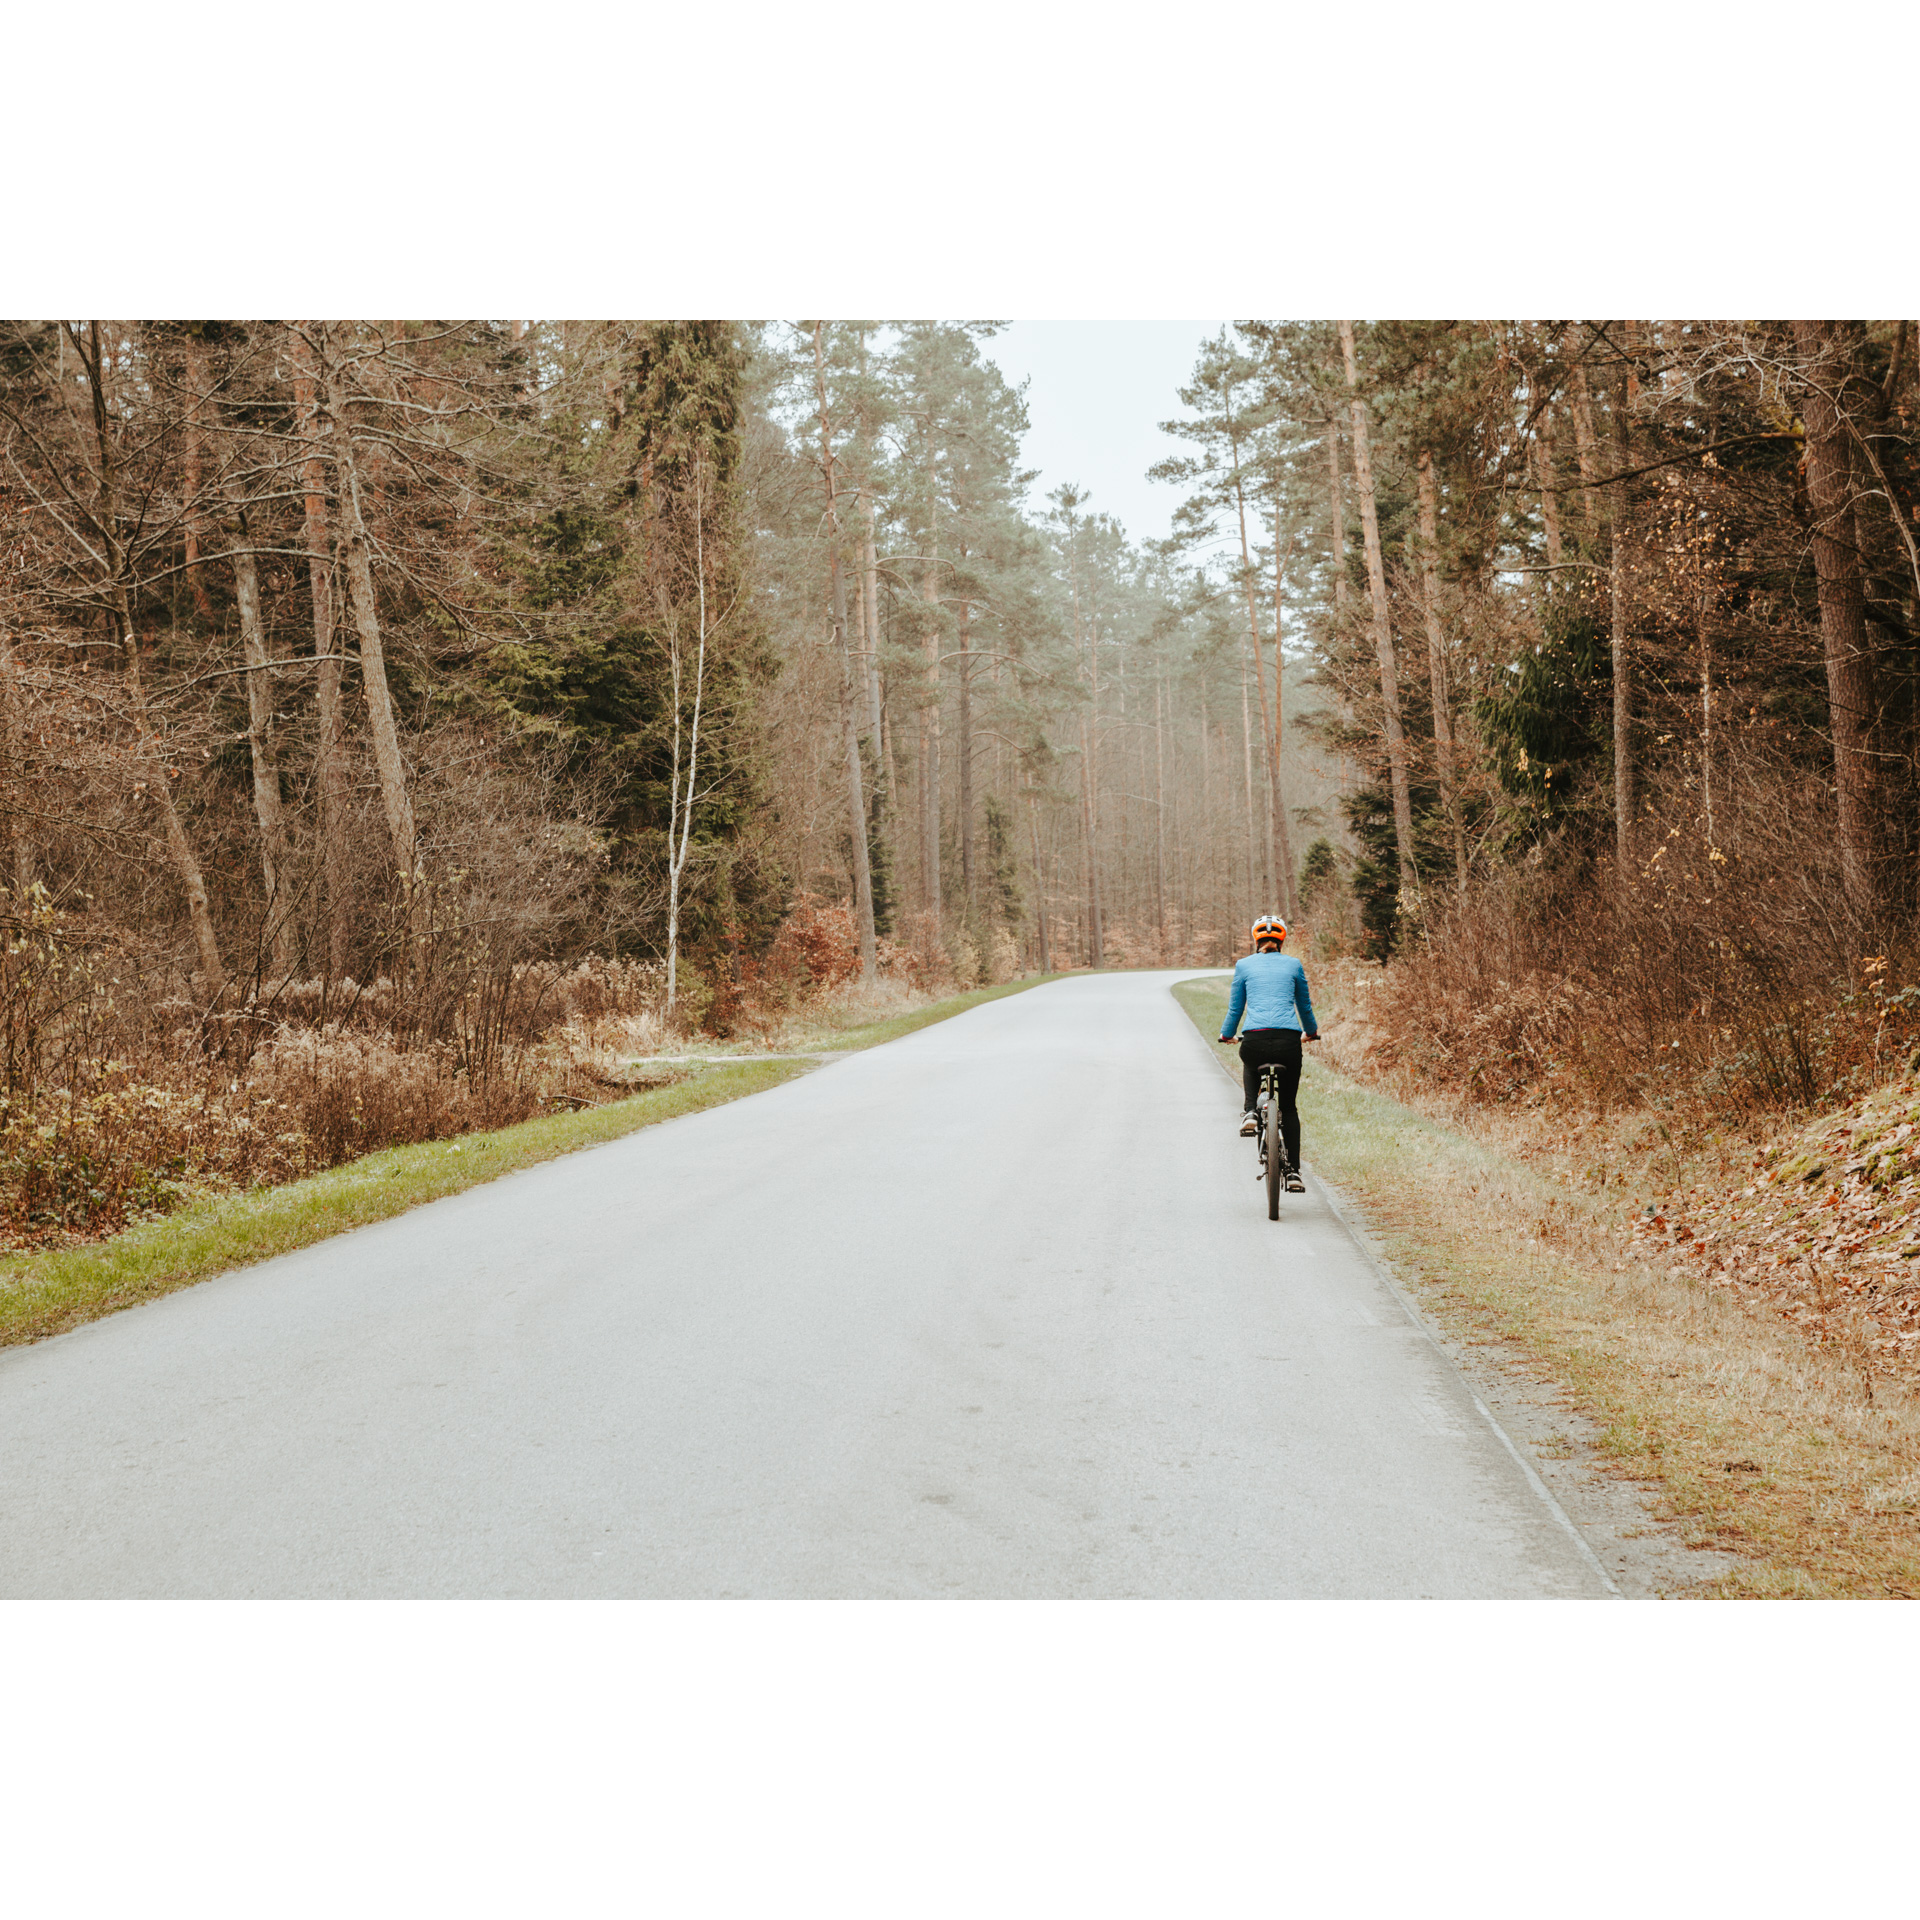 Rowerzystka w niebieskiej kurtce i białym kasku jadąca na rowerze asfaltową drogą wśród brązowo-złotych drzew i krzewów